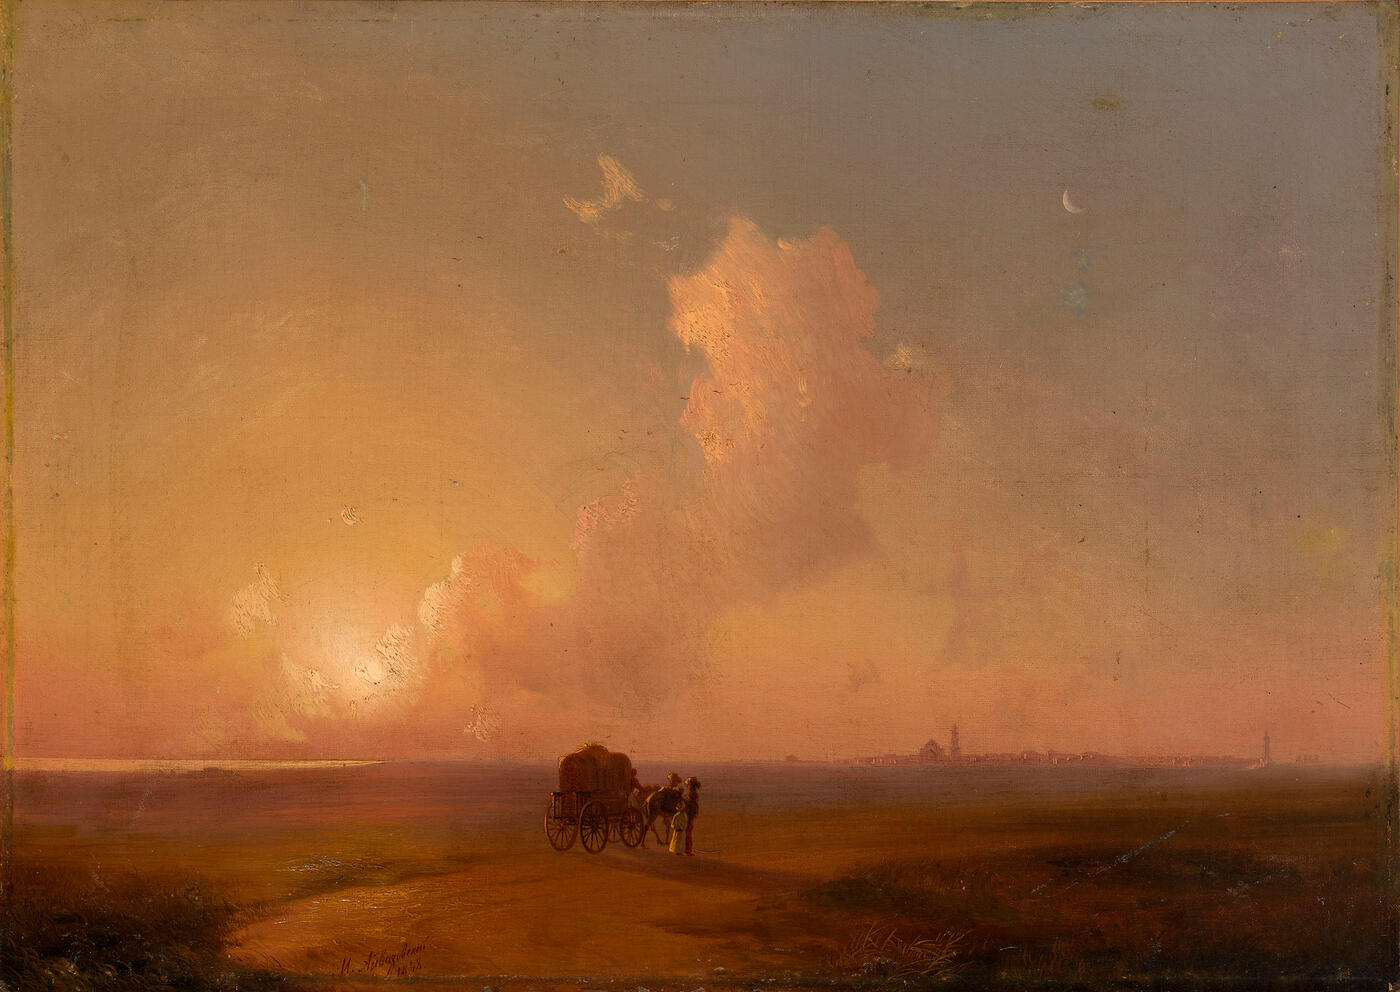 Camel-Cart at Sunset in a Coastal Landscape